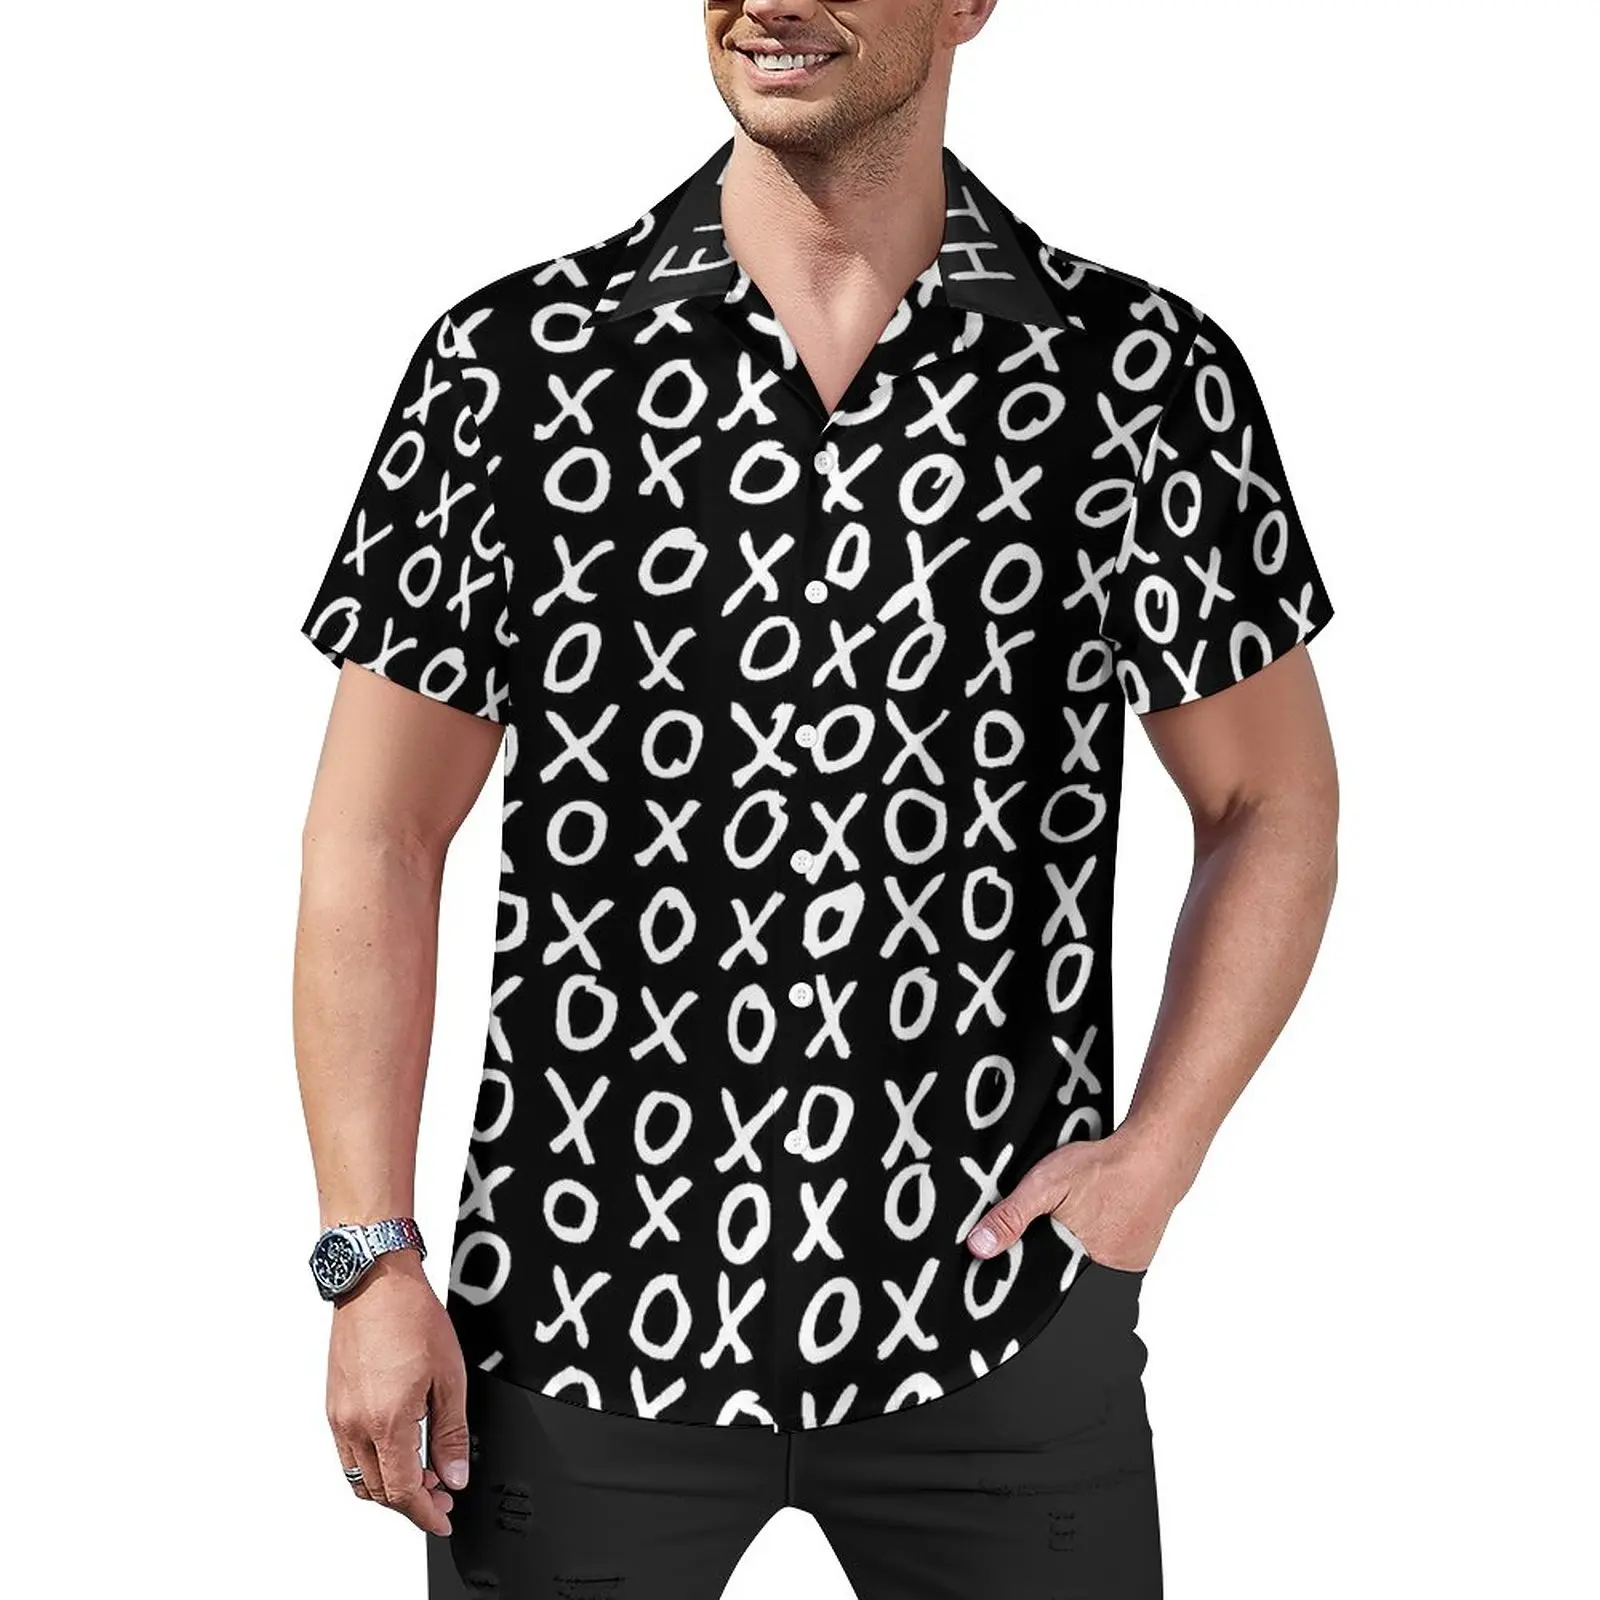 

Повседневная рубашка с буквенным принтом X and O, персонализированная пляжная Свободная рубашка, Гавайские стильные блузки, Одежда большого размера с коротким рукавом и графическим принтом